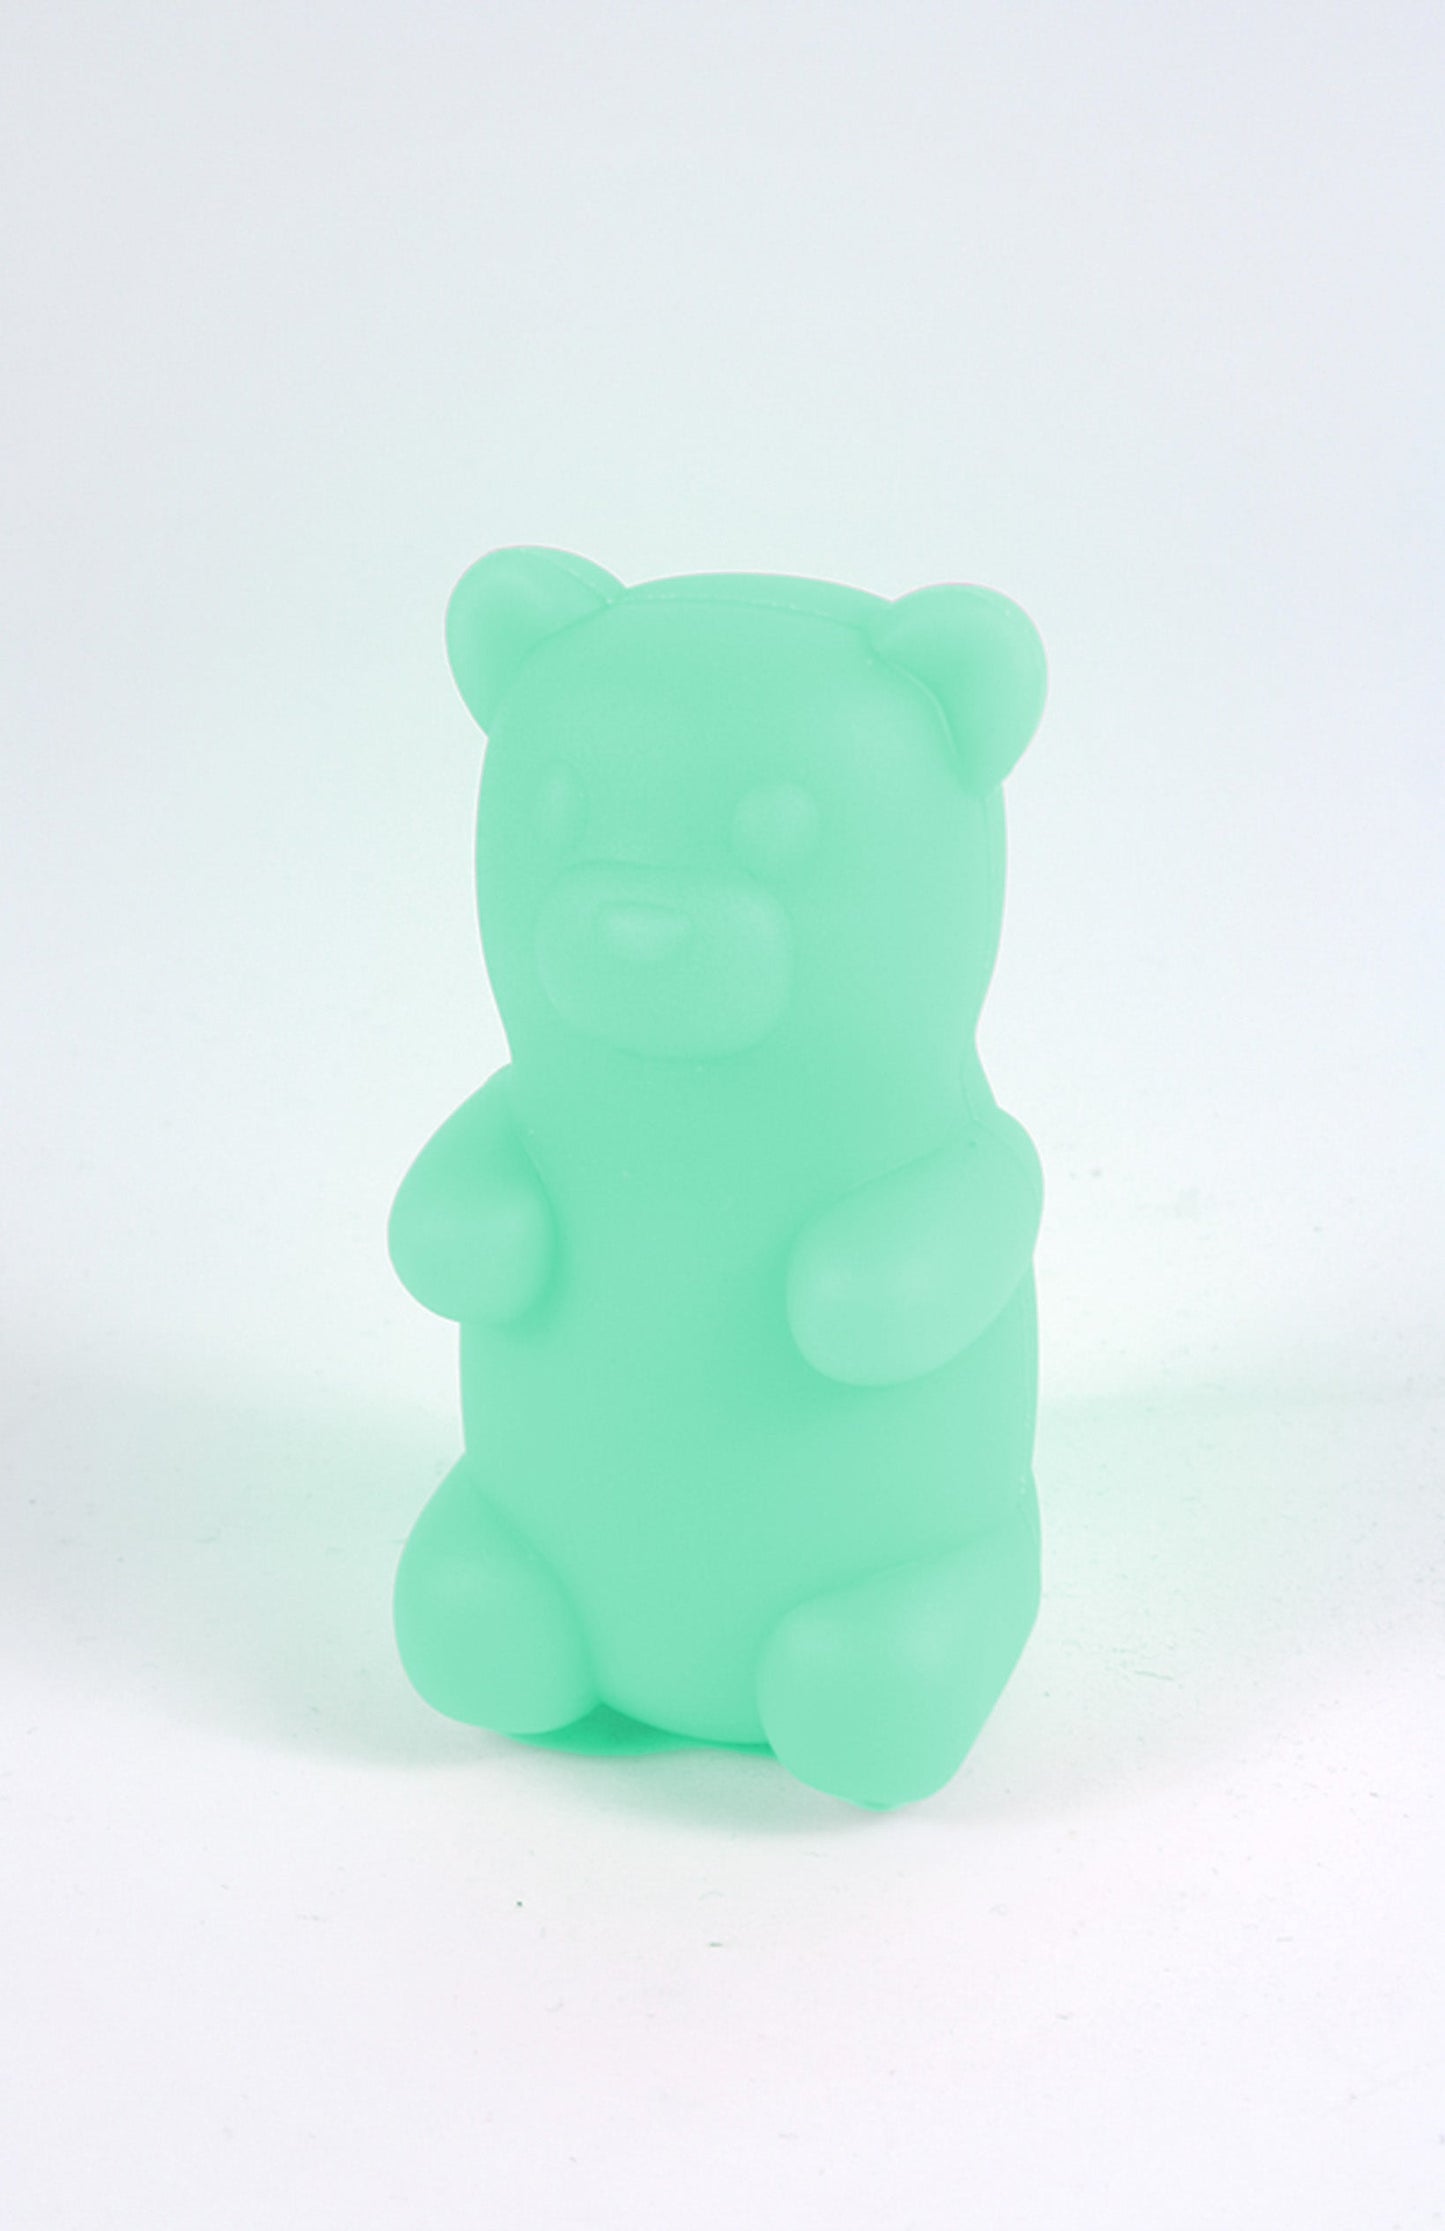 Gummy Bear Power Bank - Green